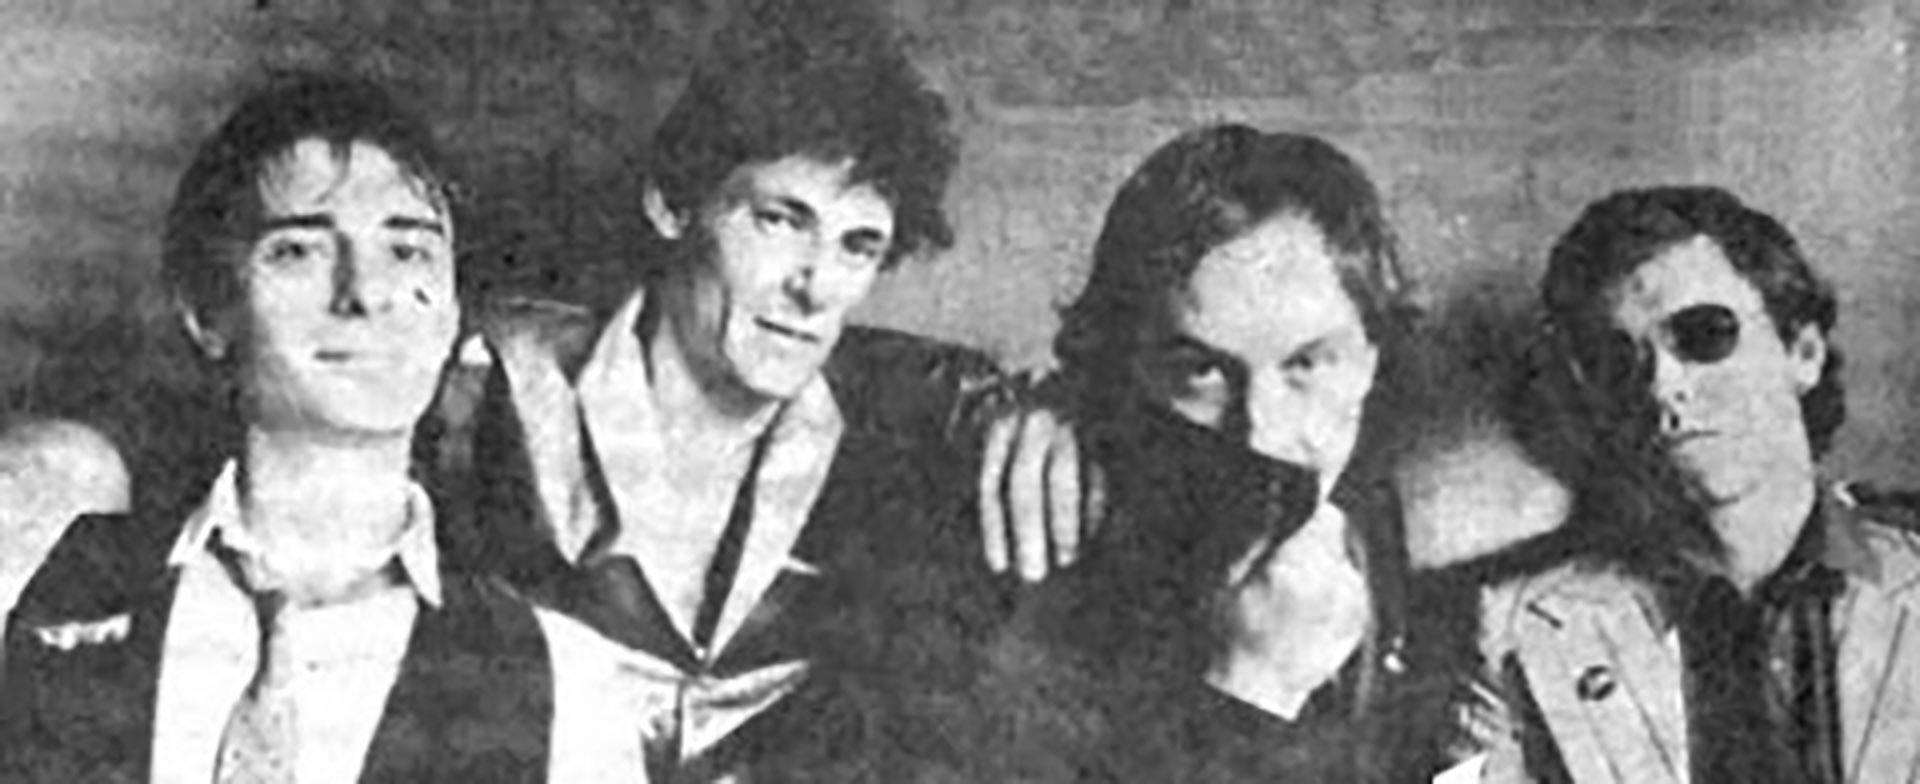 La formación de Sueter que grabó Amanece en la ruta en 1984: Jorge Minissale, Claudio Loza, Miguel Zavaleta y Gustavo Donés (Wikipedia: Revista Pelo)